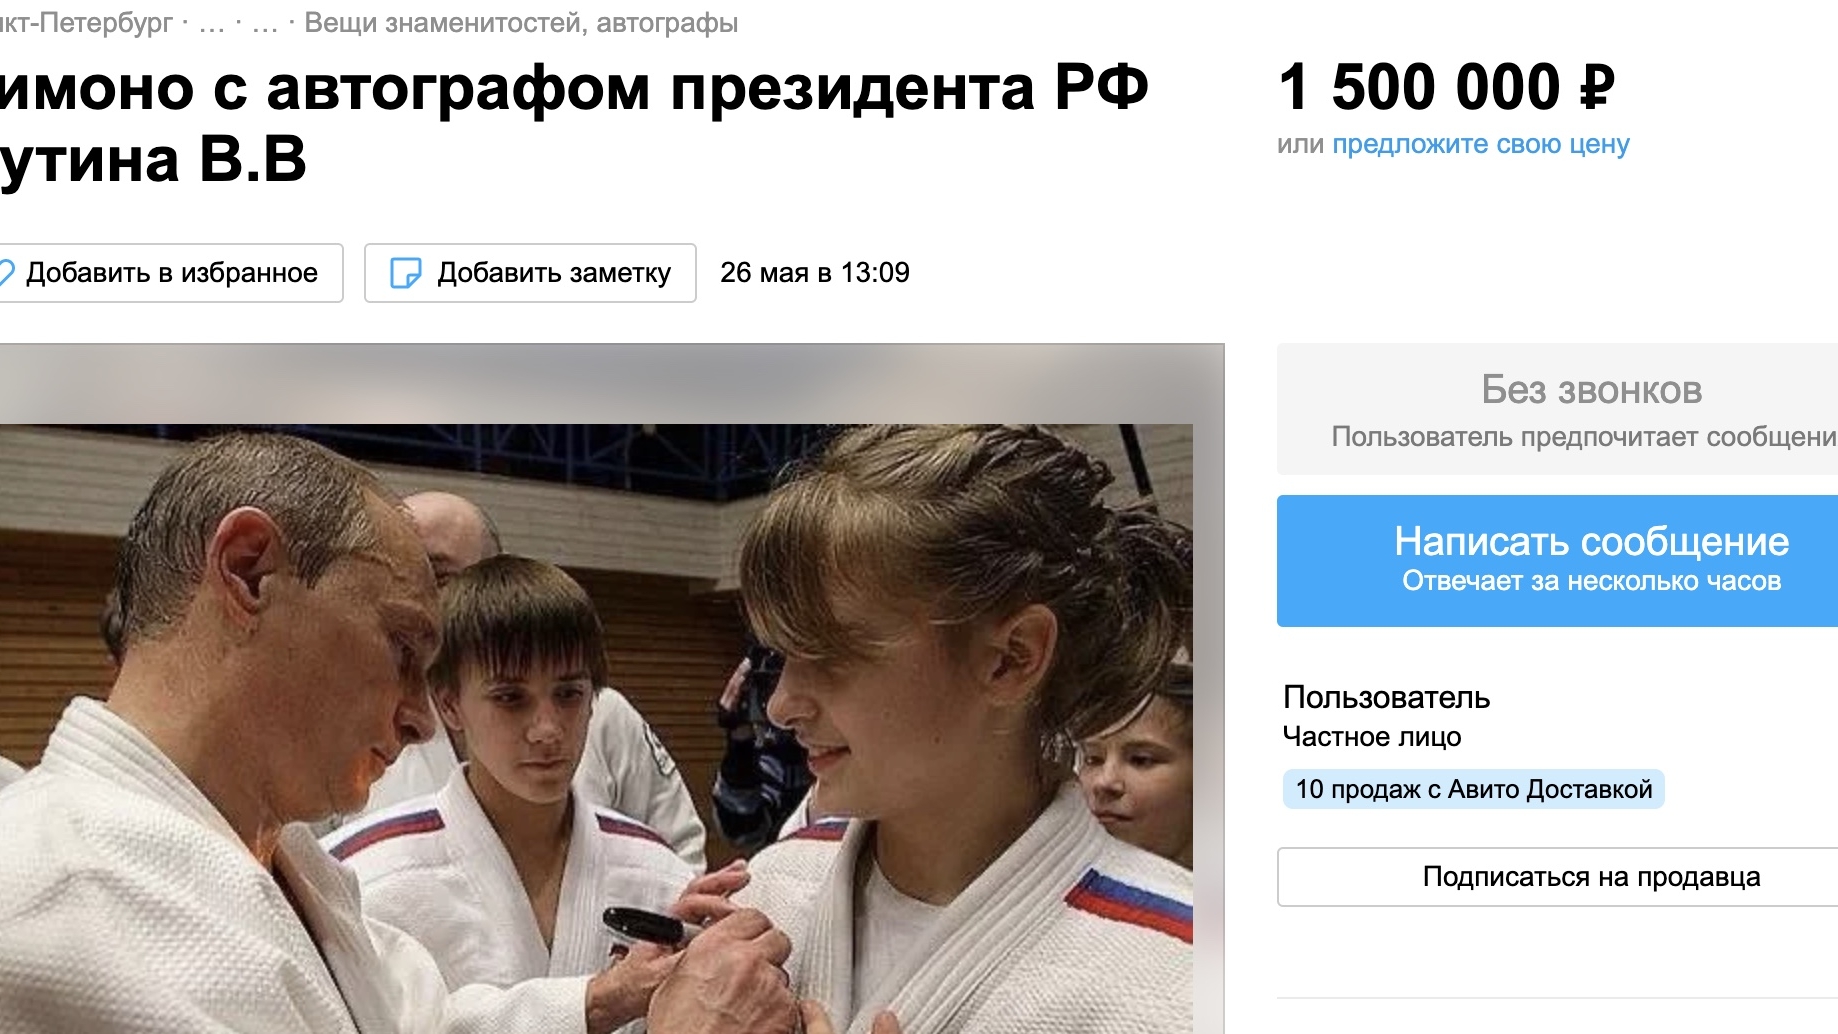 Петербурженка продает кимоно с автографом Путина за 1,5 млн рублей